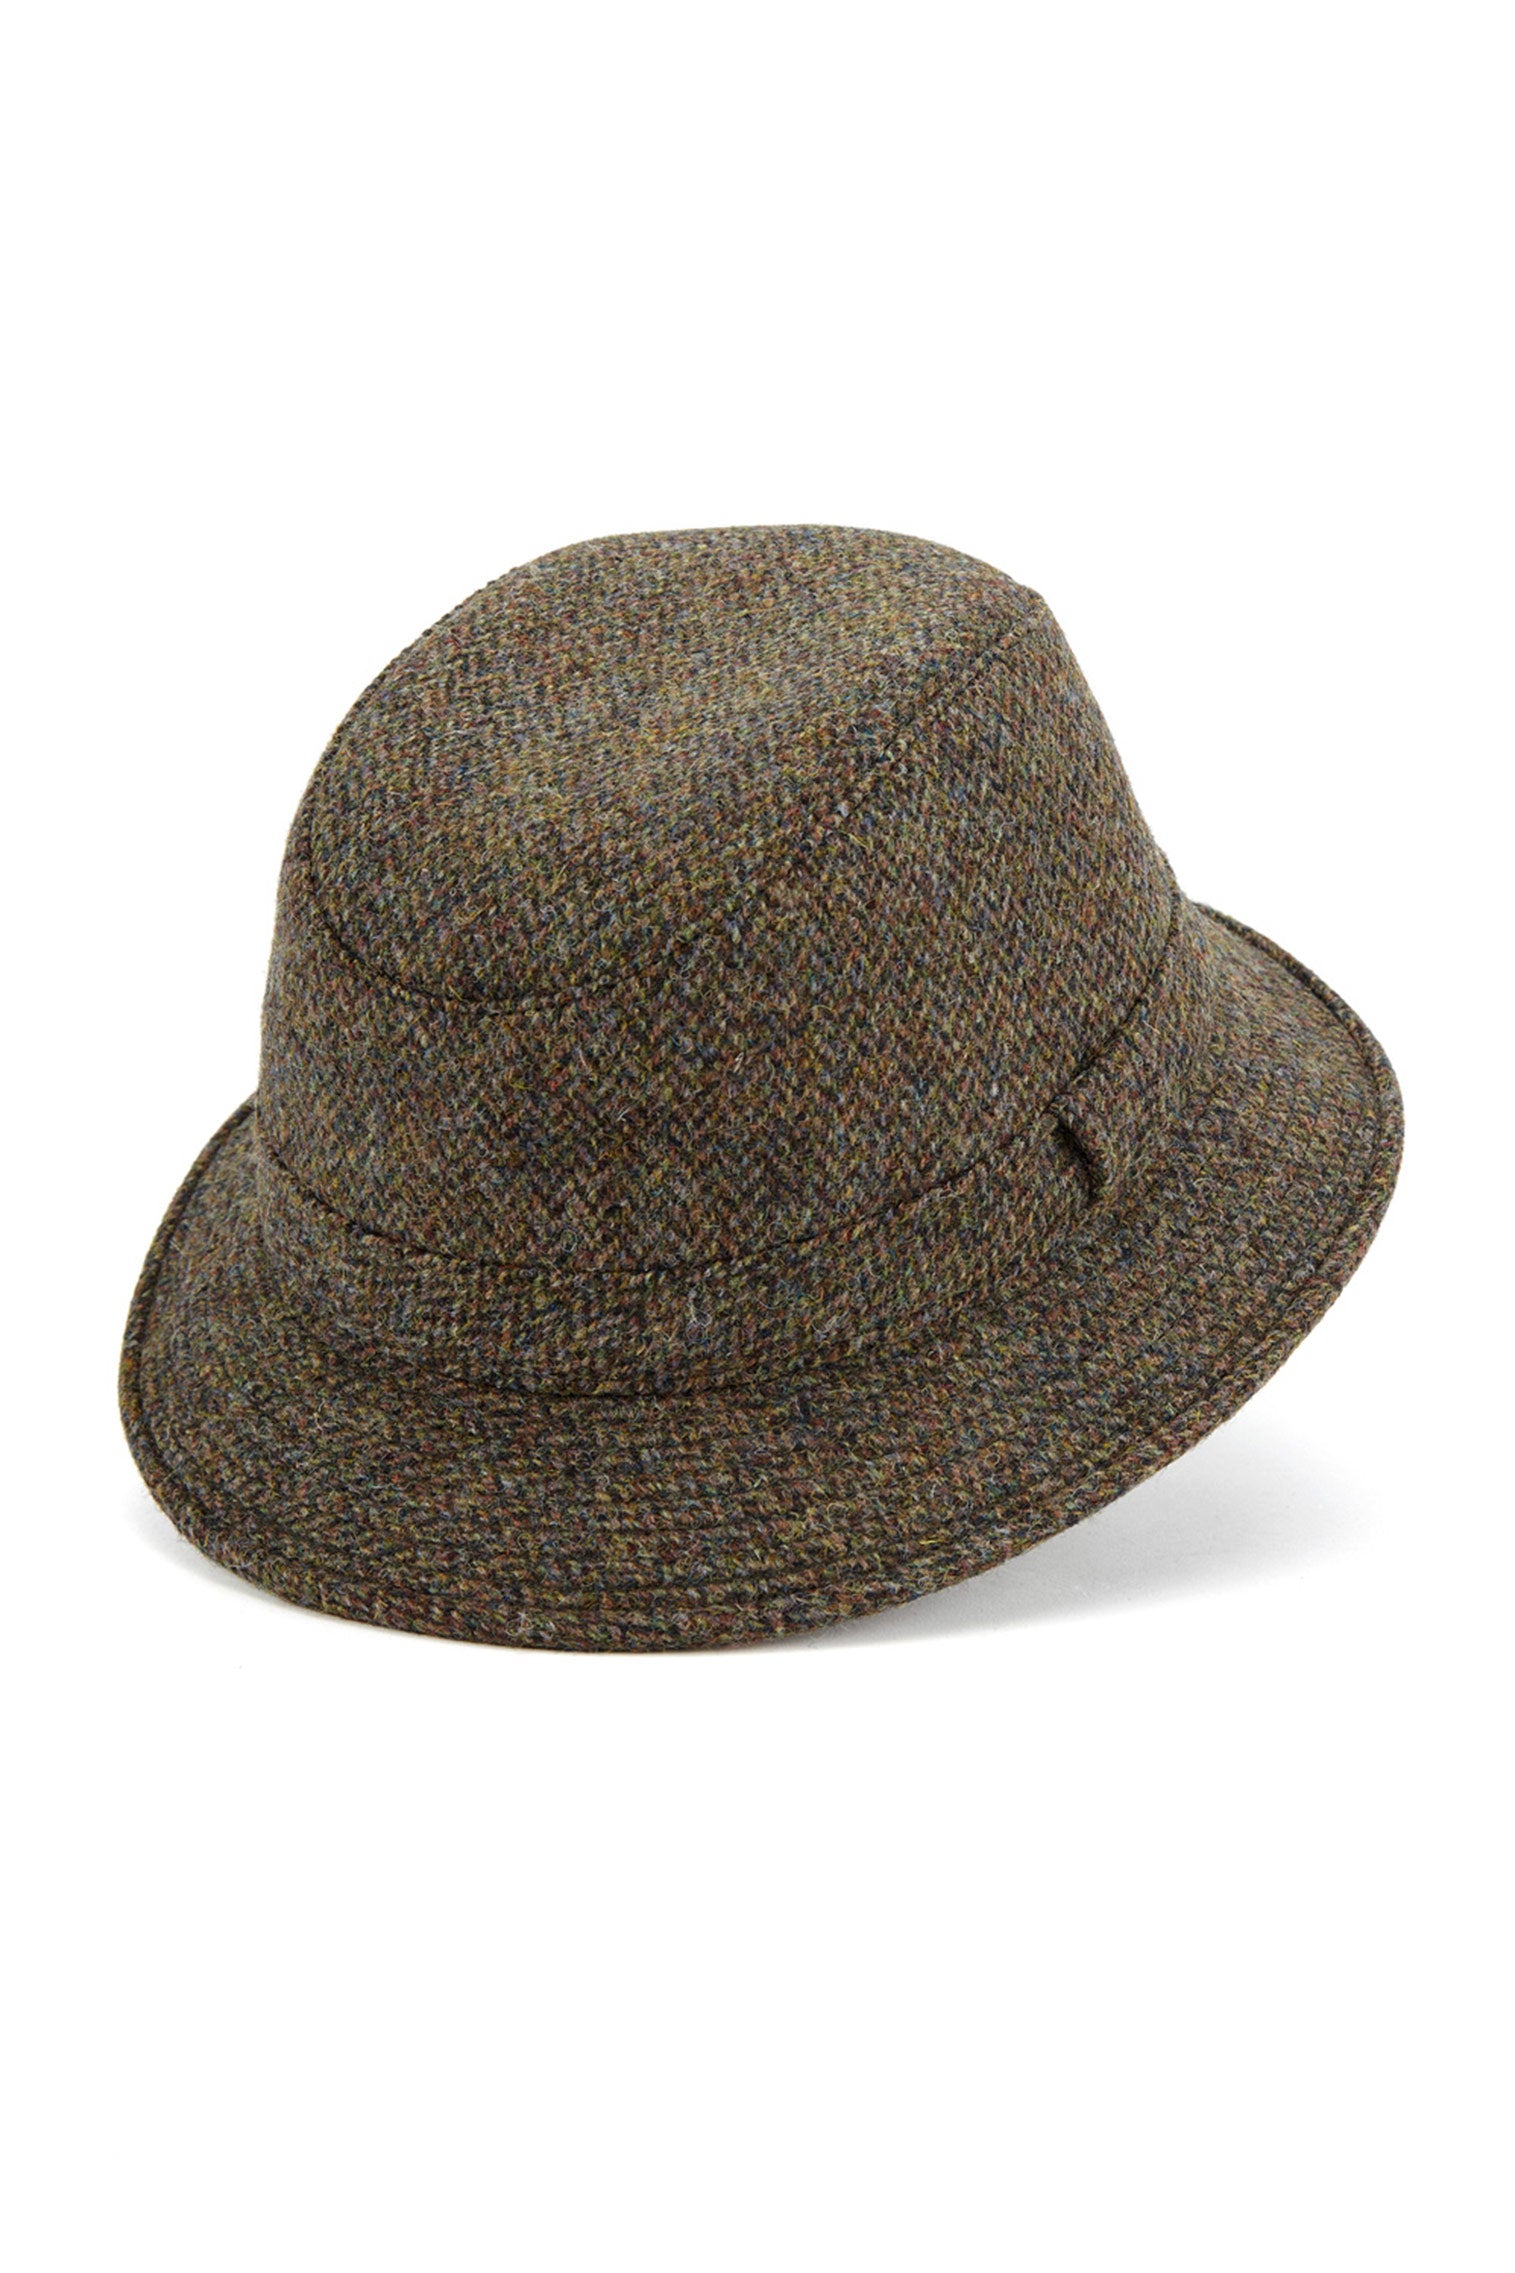 Grouse Tweed Rollable Hat - Men’s Bucket Hats - Lock & Co. Hatters London UK